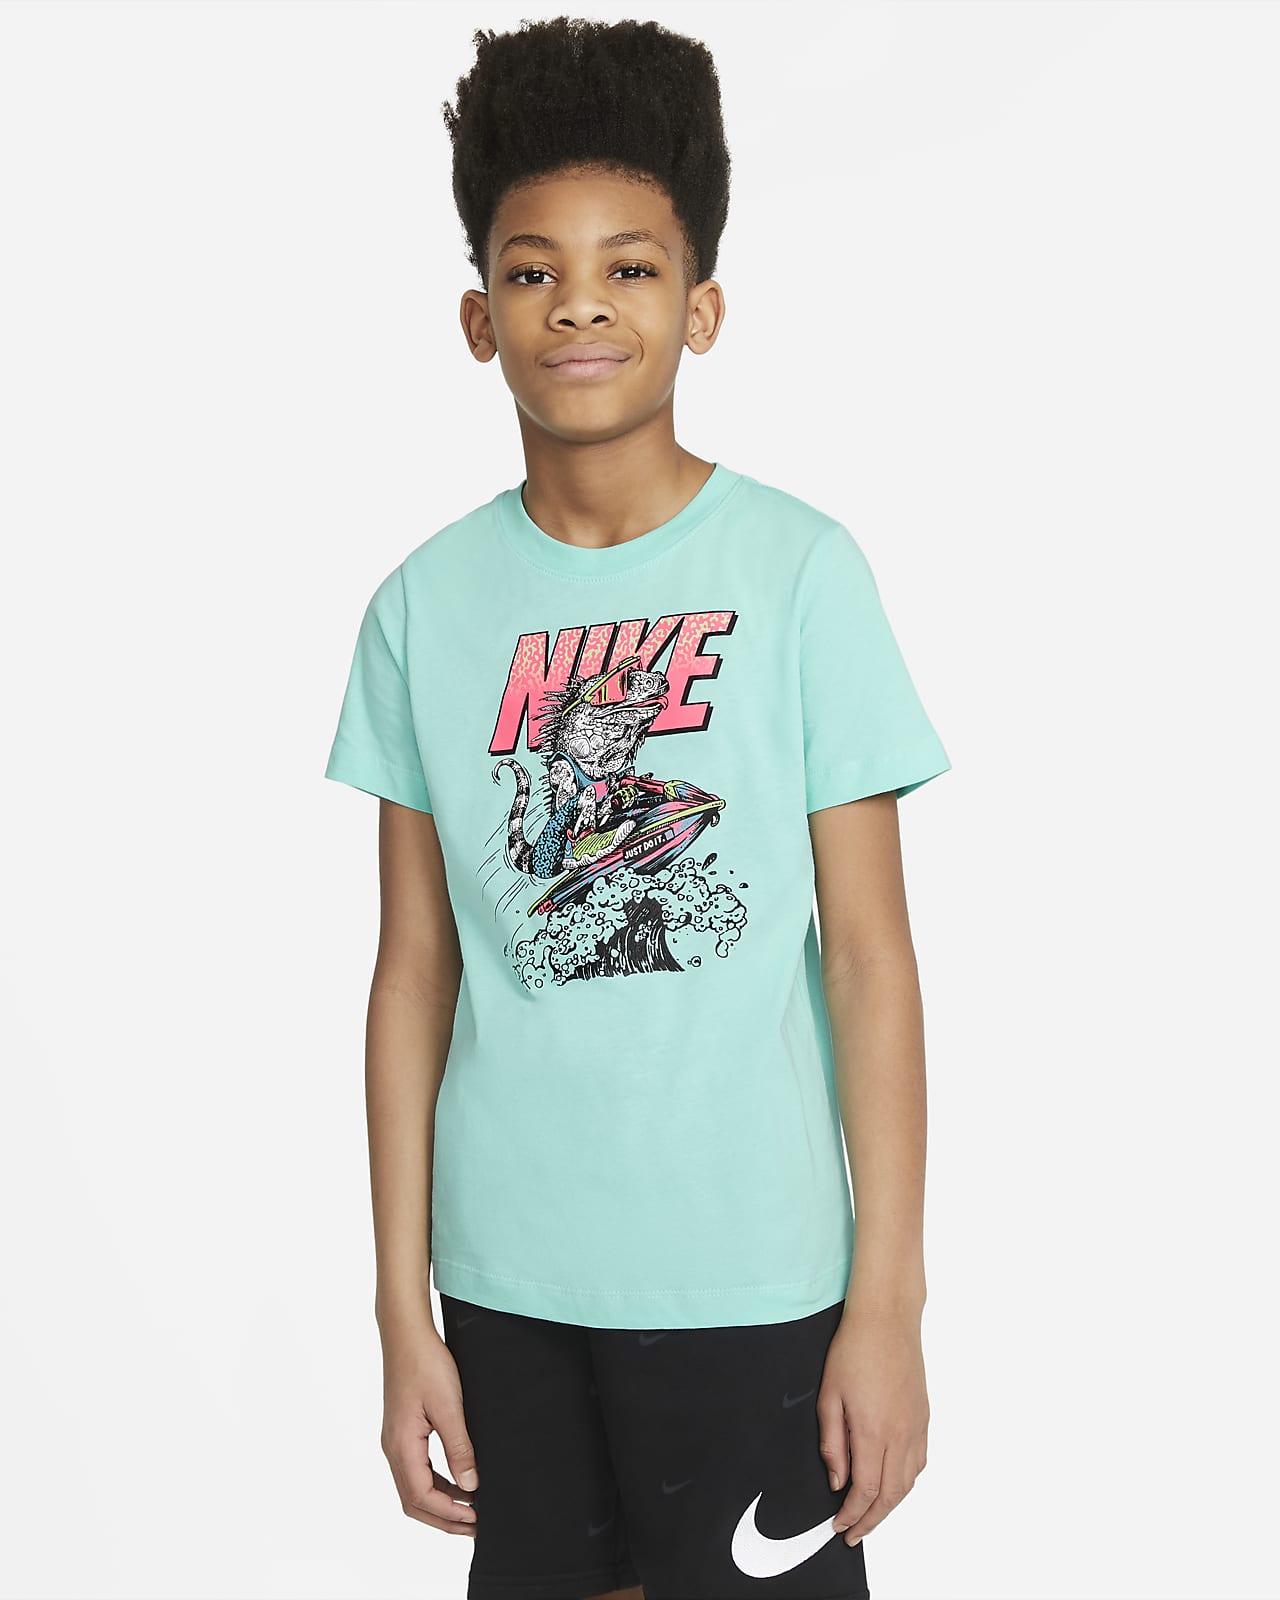 Nike公式 ナイキ スポーツウェア ジュニア ボーイズ Tシャツ オンラインストア 通販サイト